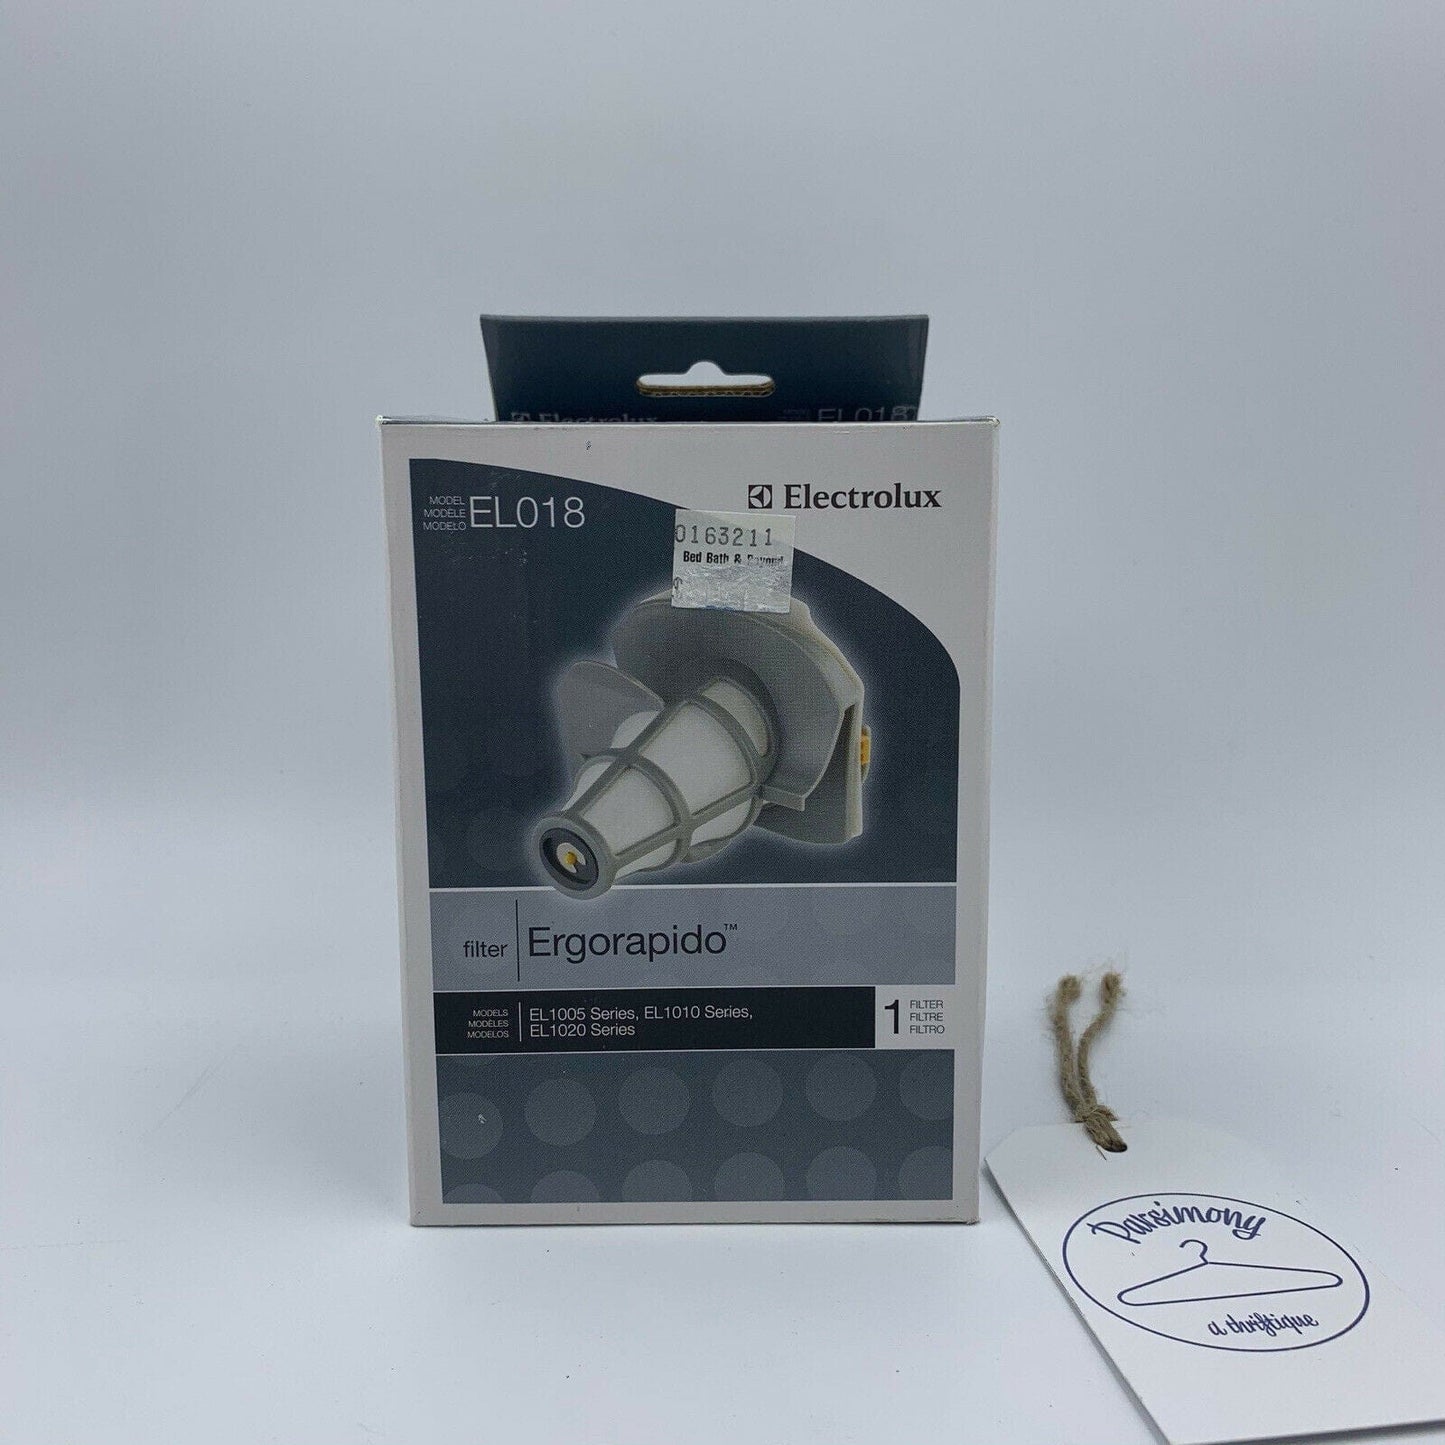 NEW Electrolux Vacuum Filter EL018 EL1005 EL1010 EL1020 Series